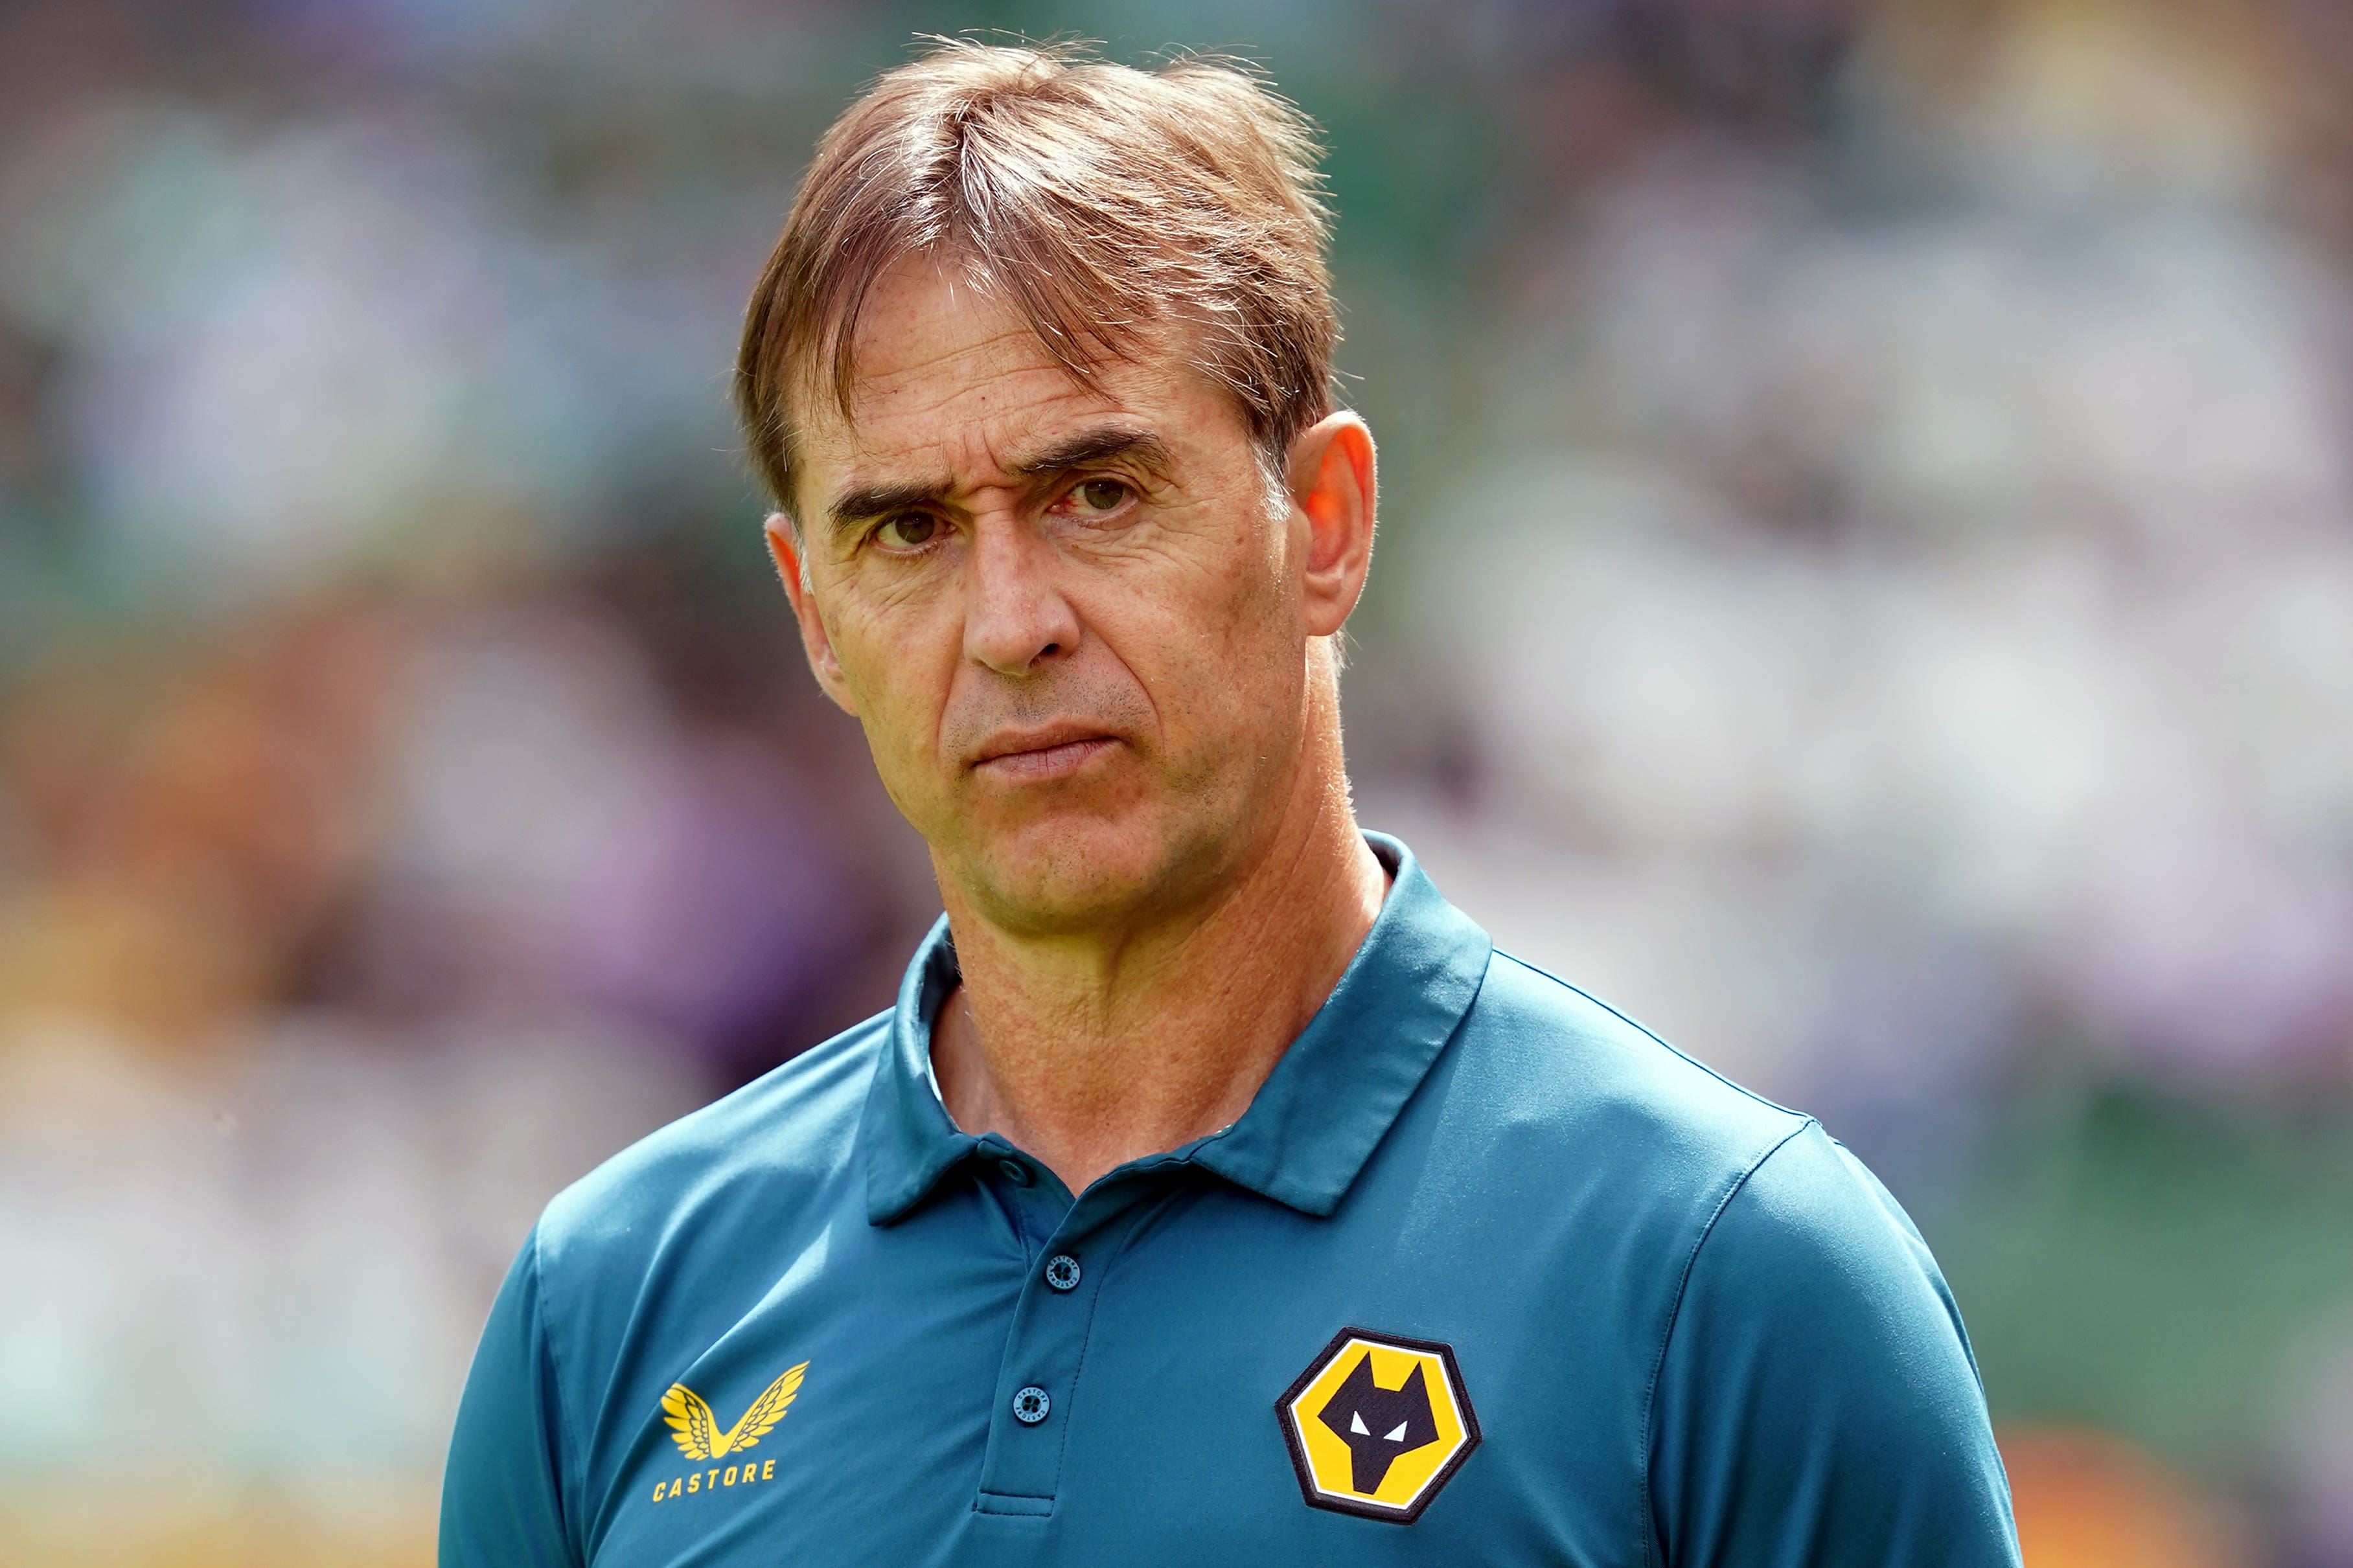 Julen Lopetegui left Wolves after nine months in charge